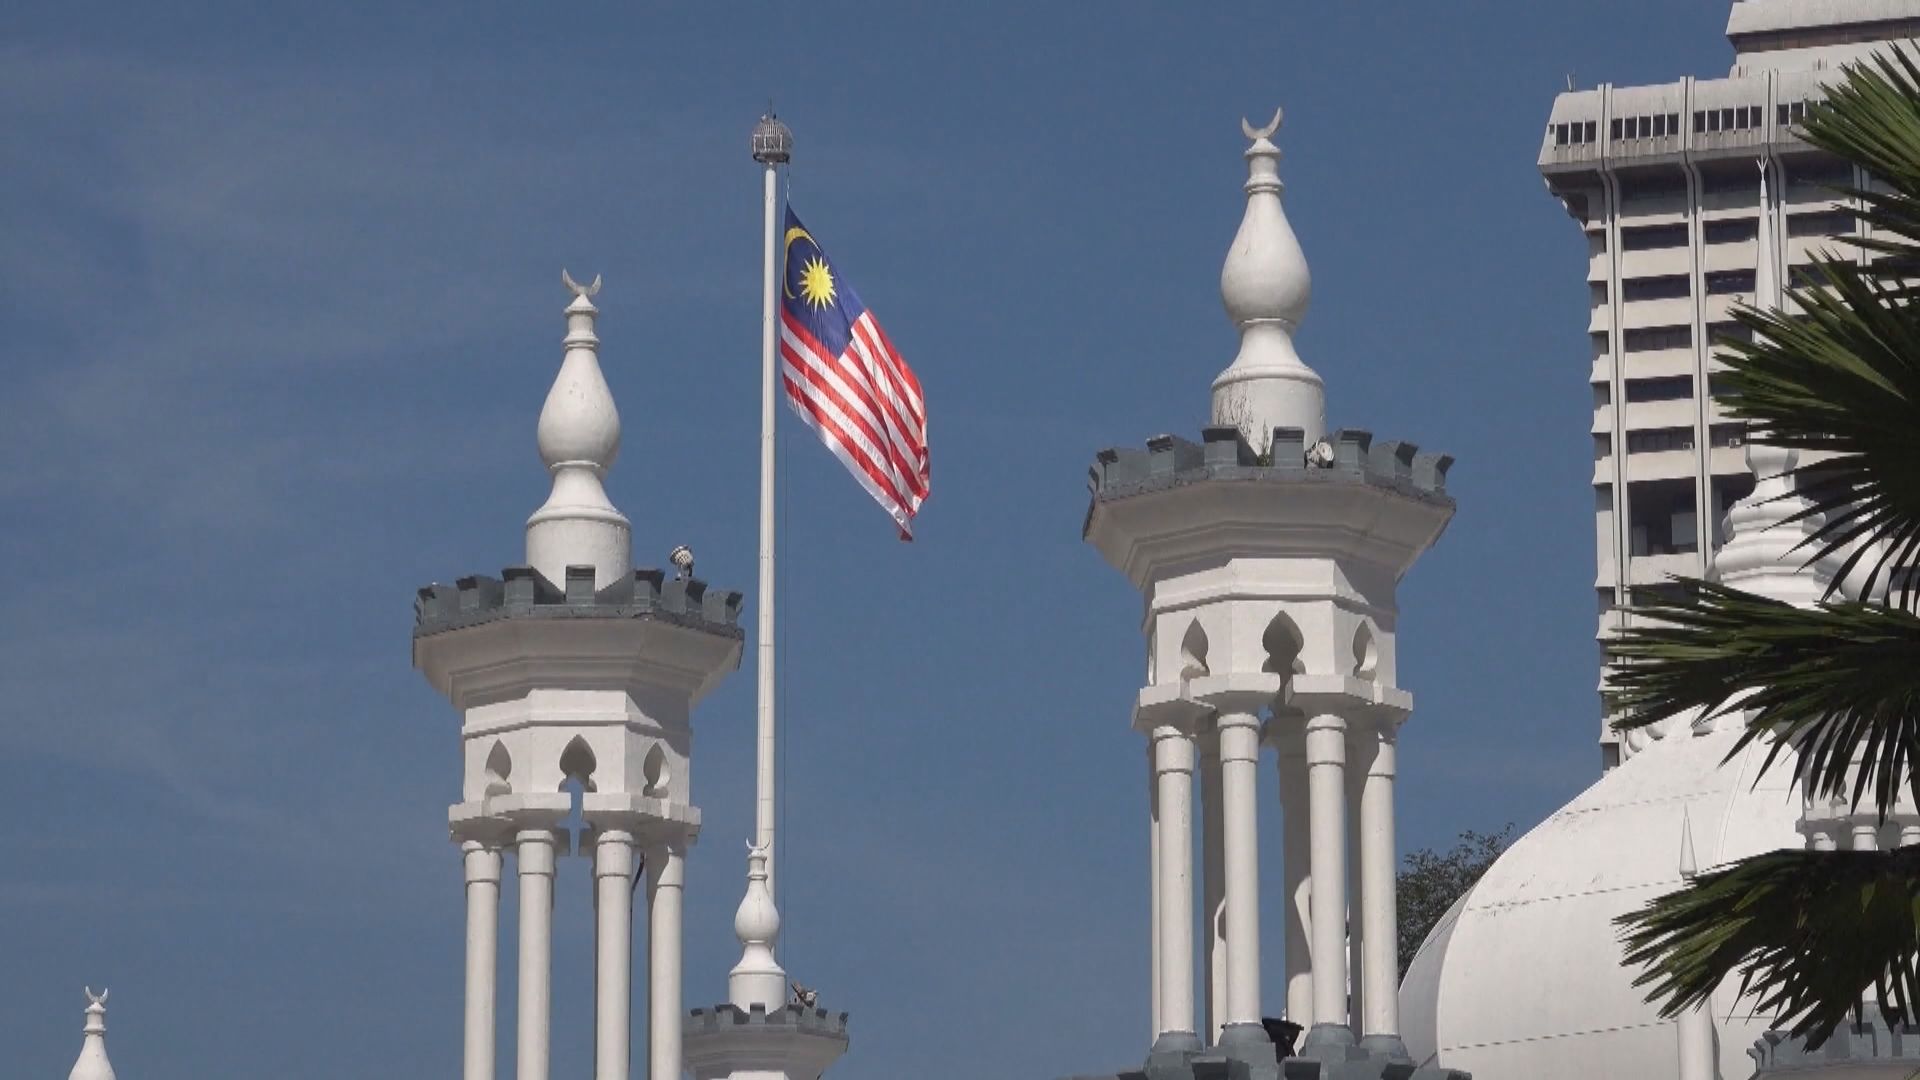 馬來西亞周四召開統治者會議商討新總理人選